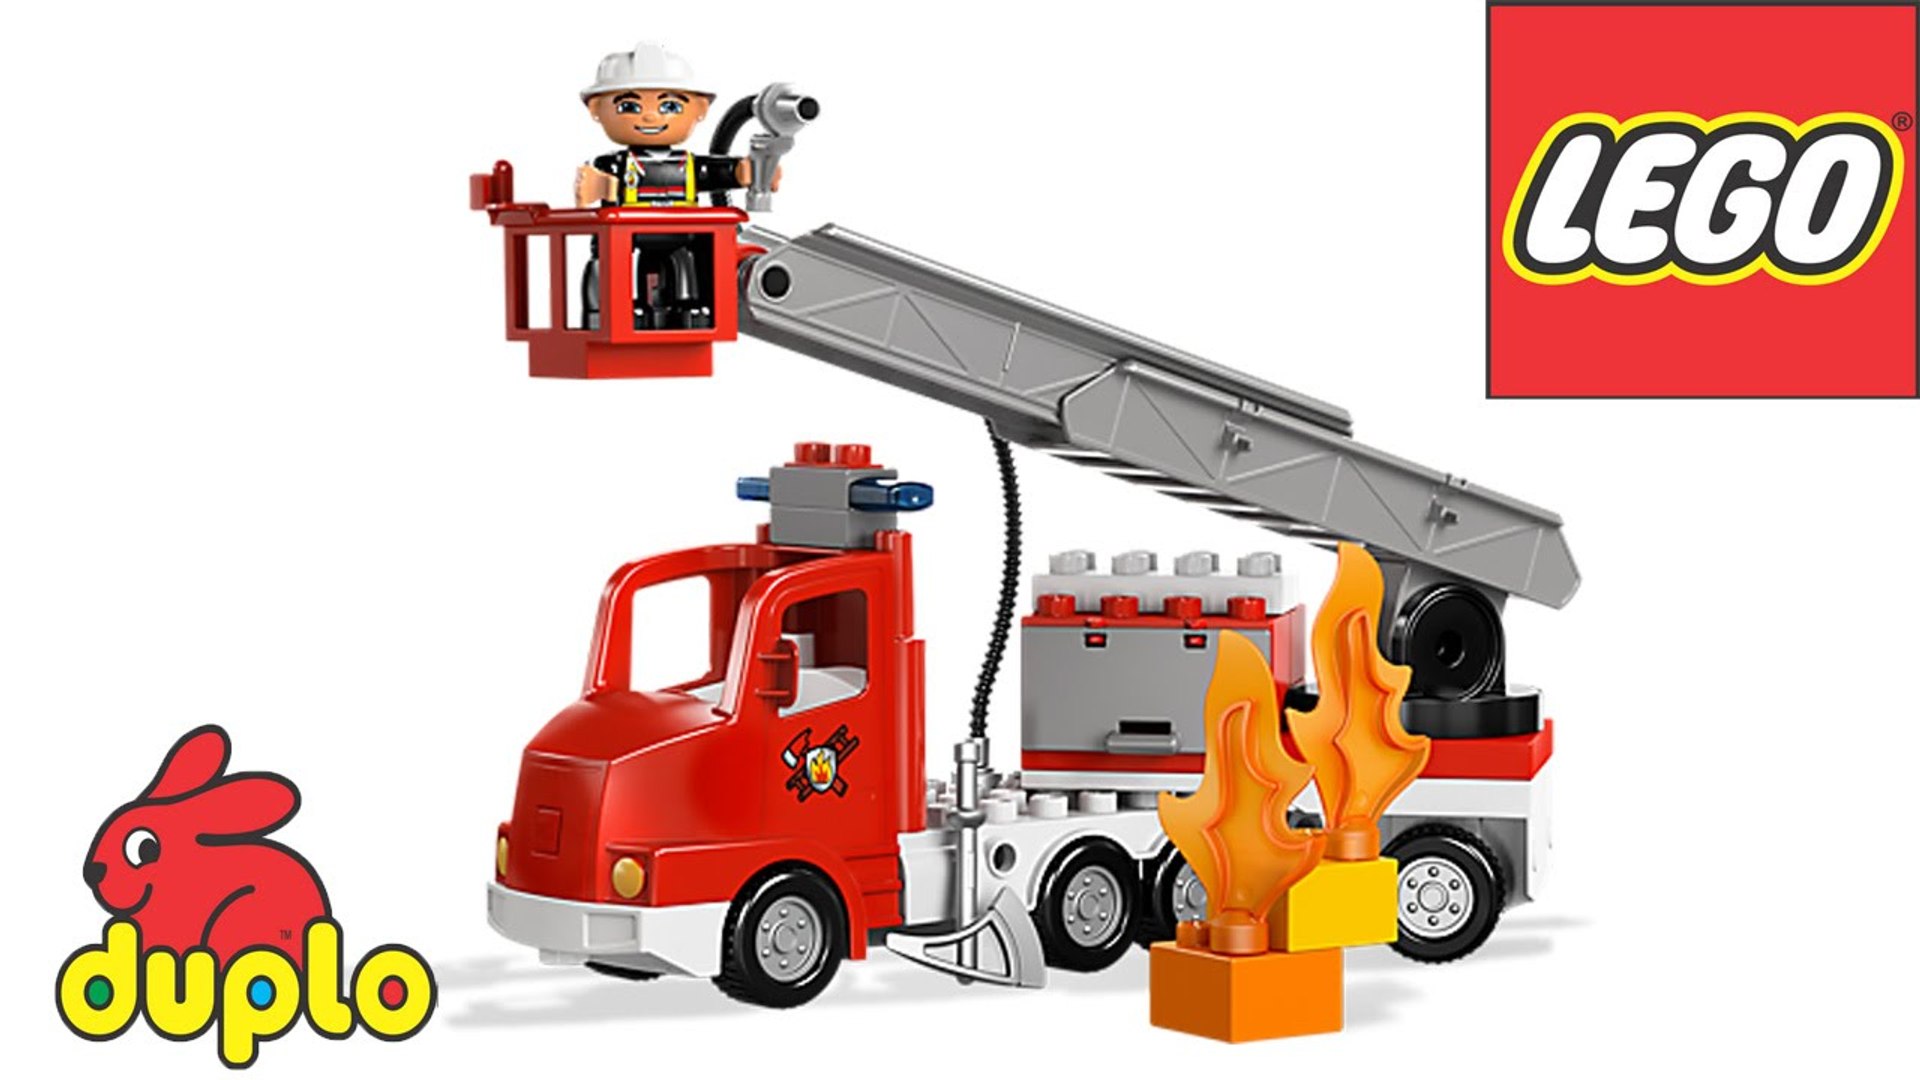 national Udfør Afdæk LEGO Duplo Fire Truck 10592 Instructions for Kids Bricks & Building Blocks  - video Dailymotion